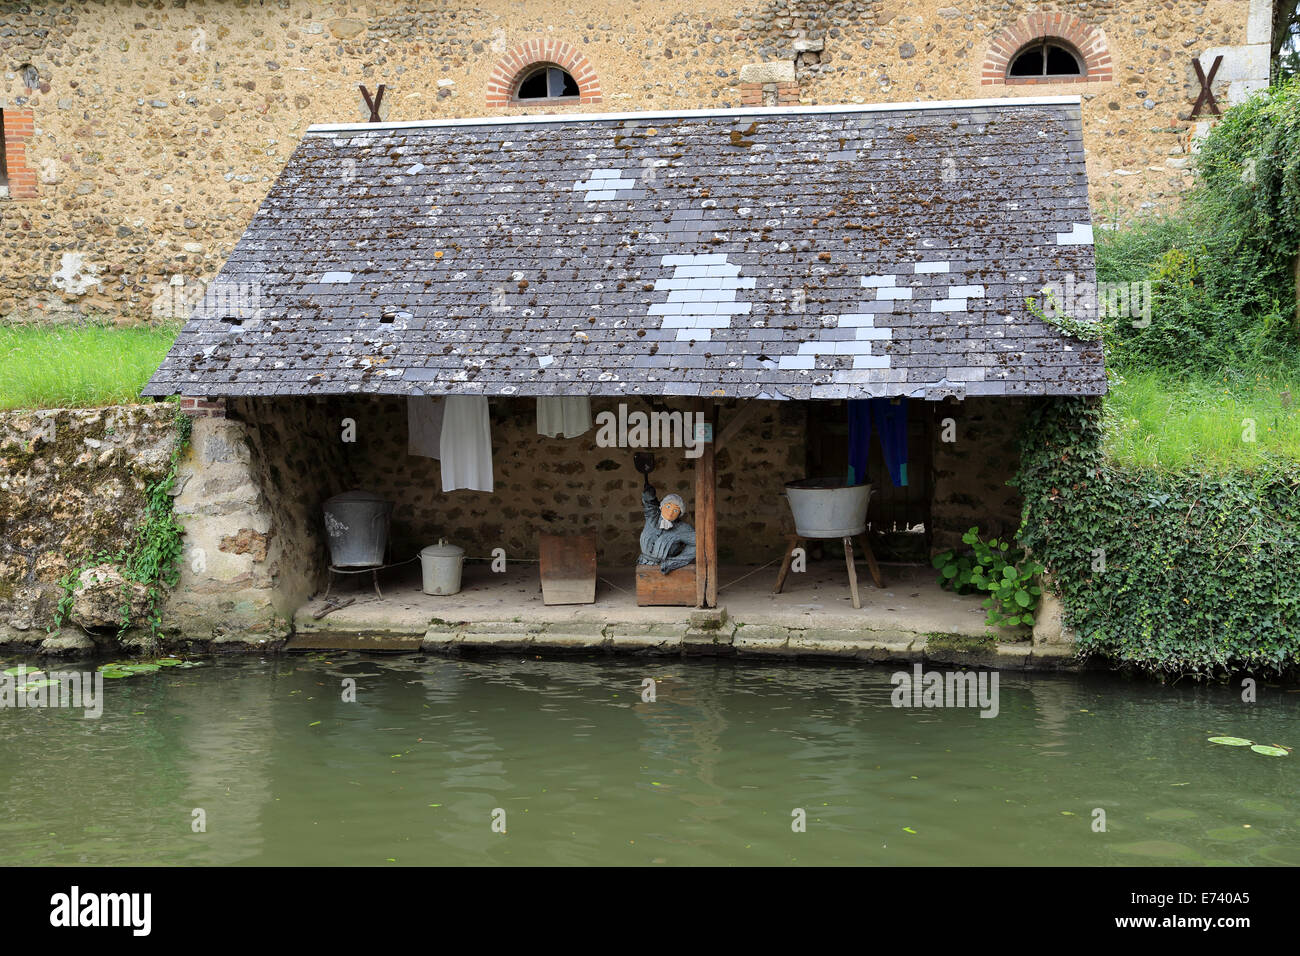 Wash house (laverie) on River Loir Fosse, Rue des Fosses Saints Jacques, River Loir, Bonneval, Eure et Loir, Centre, France Stock Photo